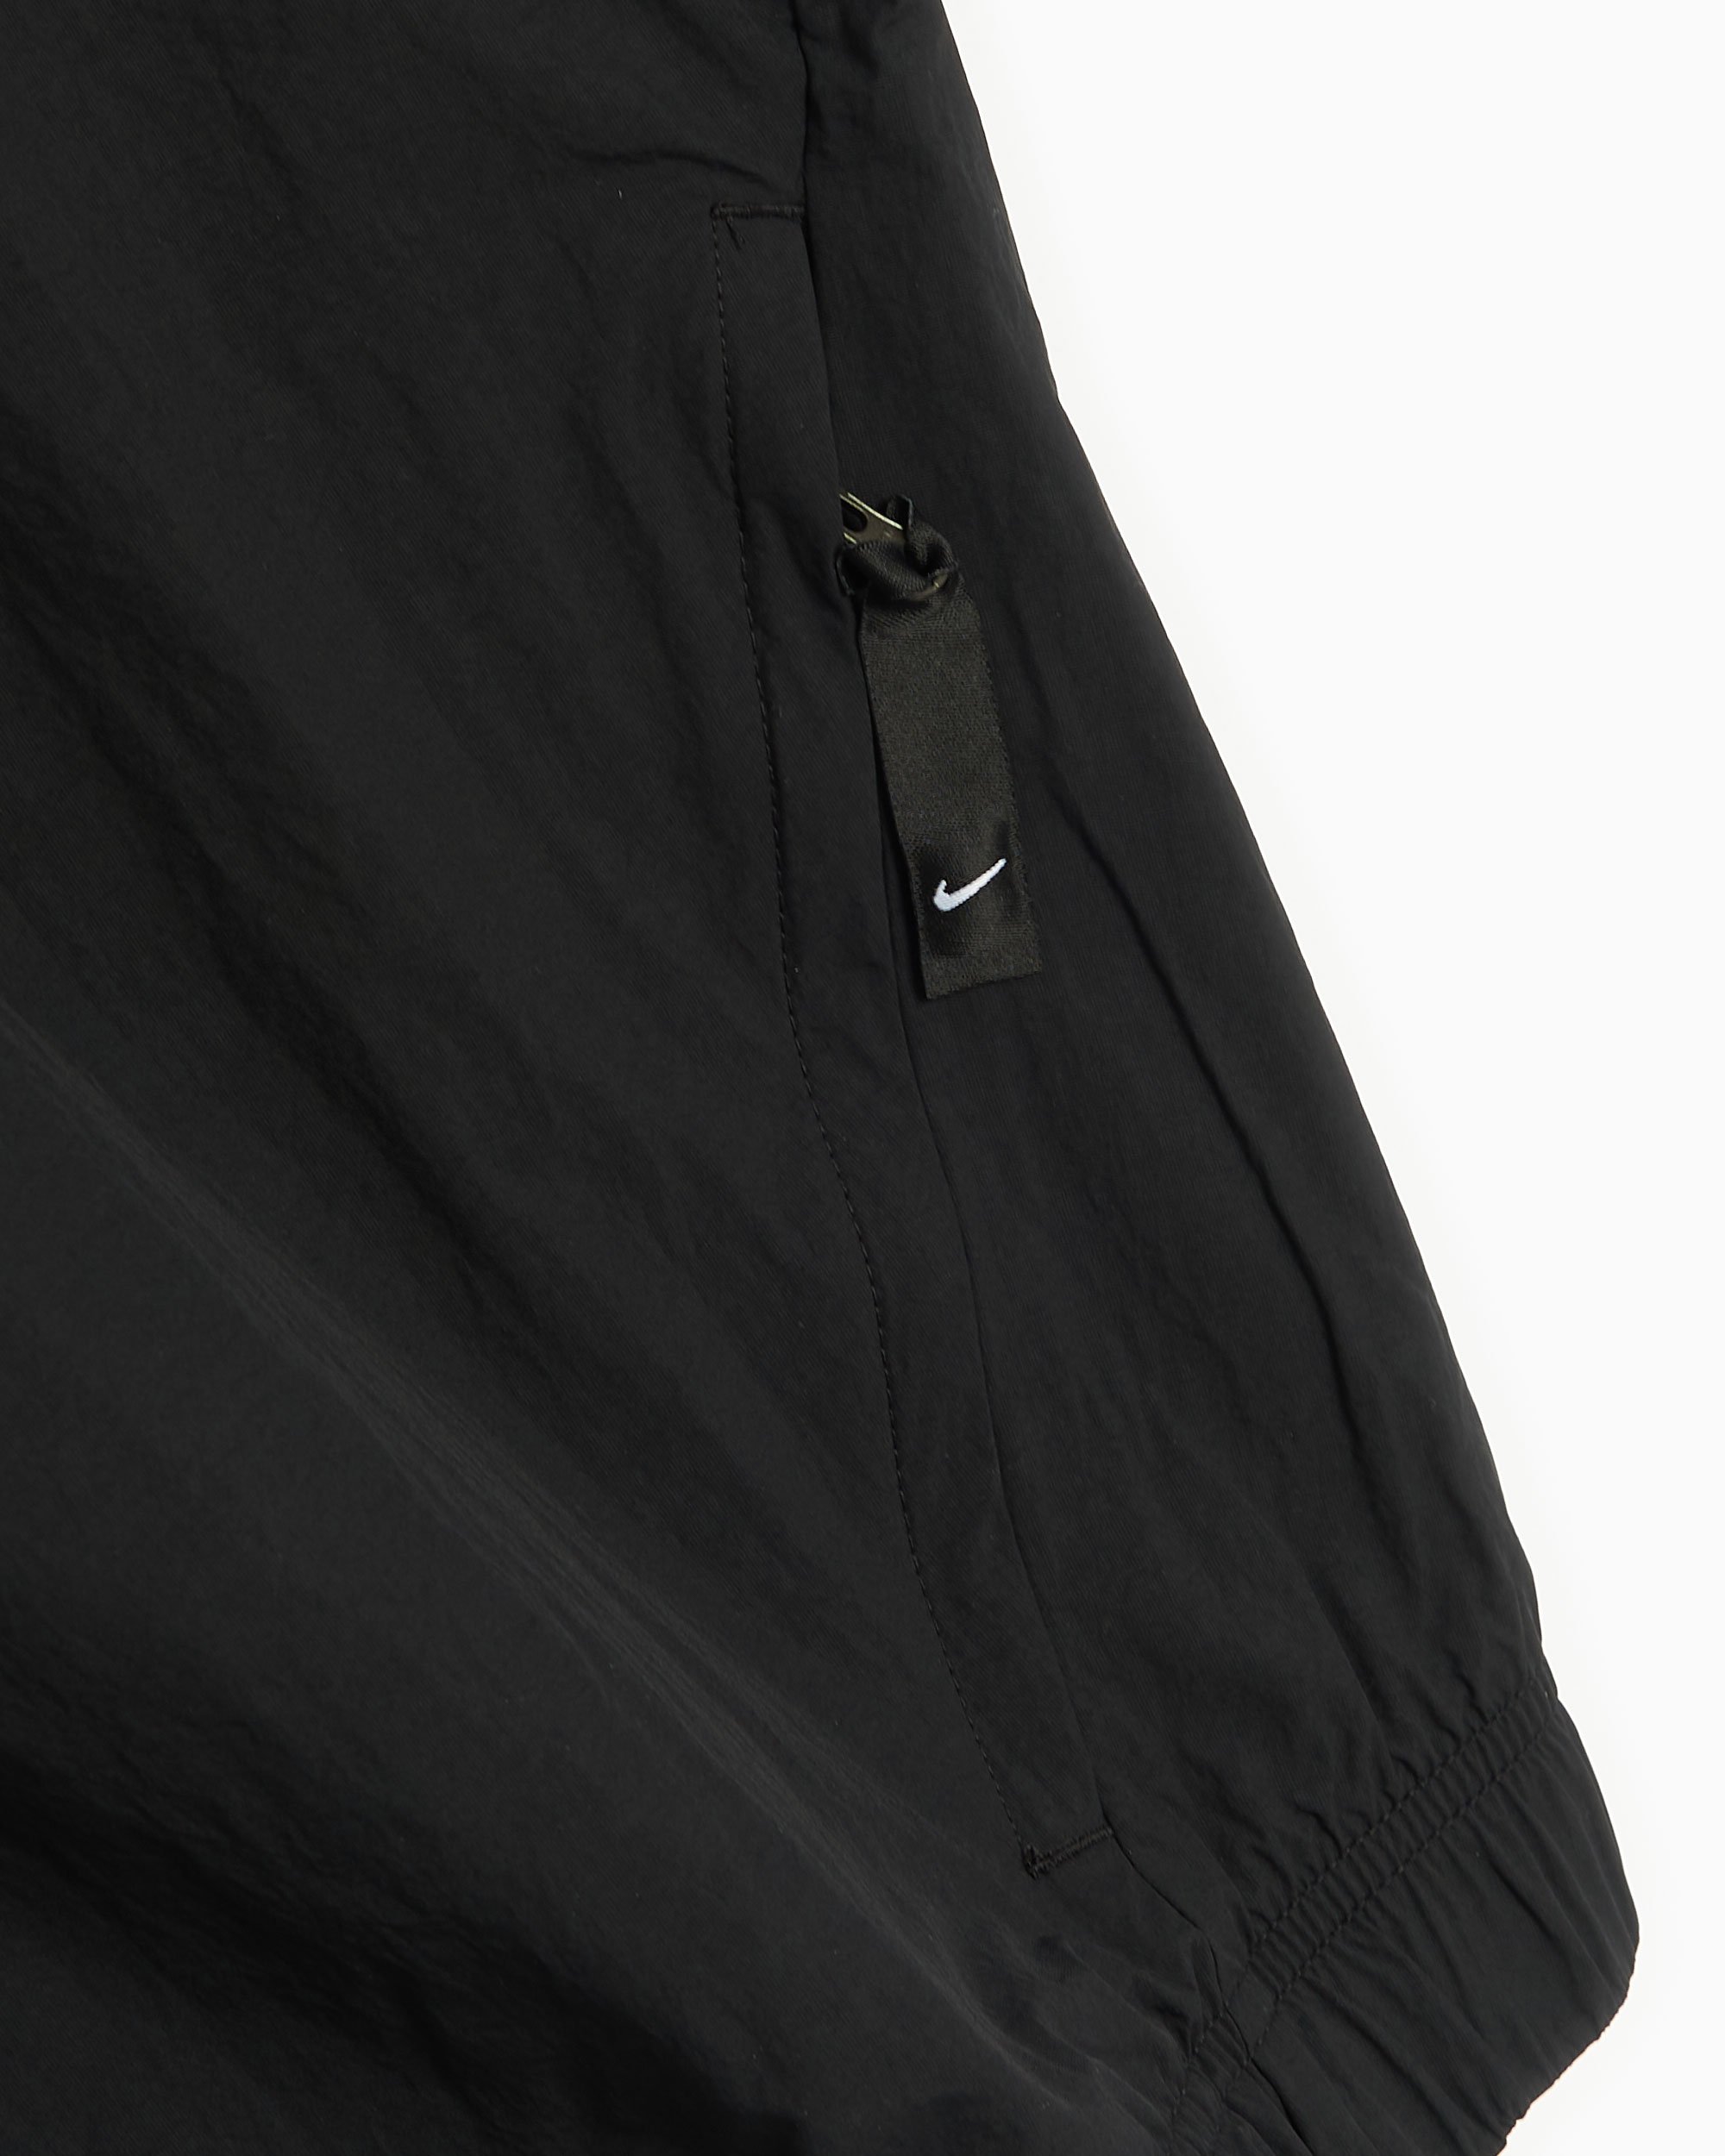 Nike Sportswear Solo Swoosh Men's Track Jacket Black DQ5200-010| Buy ...